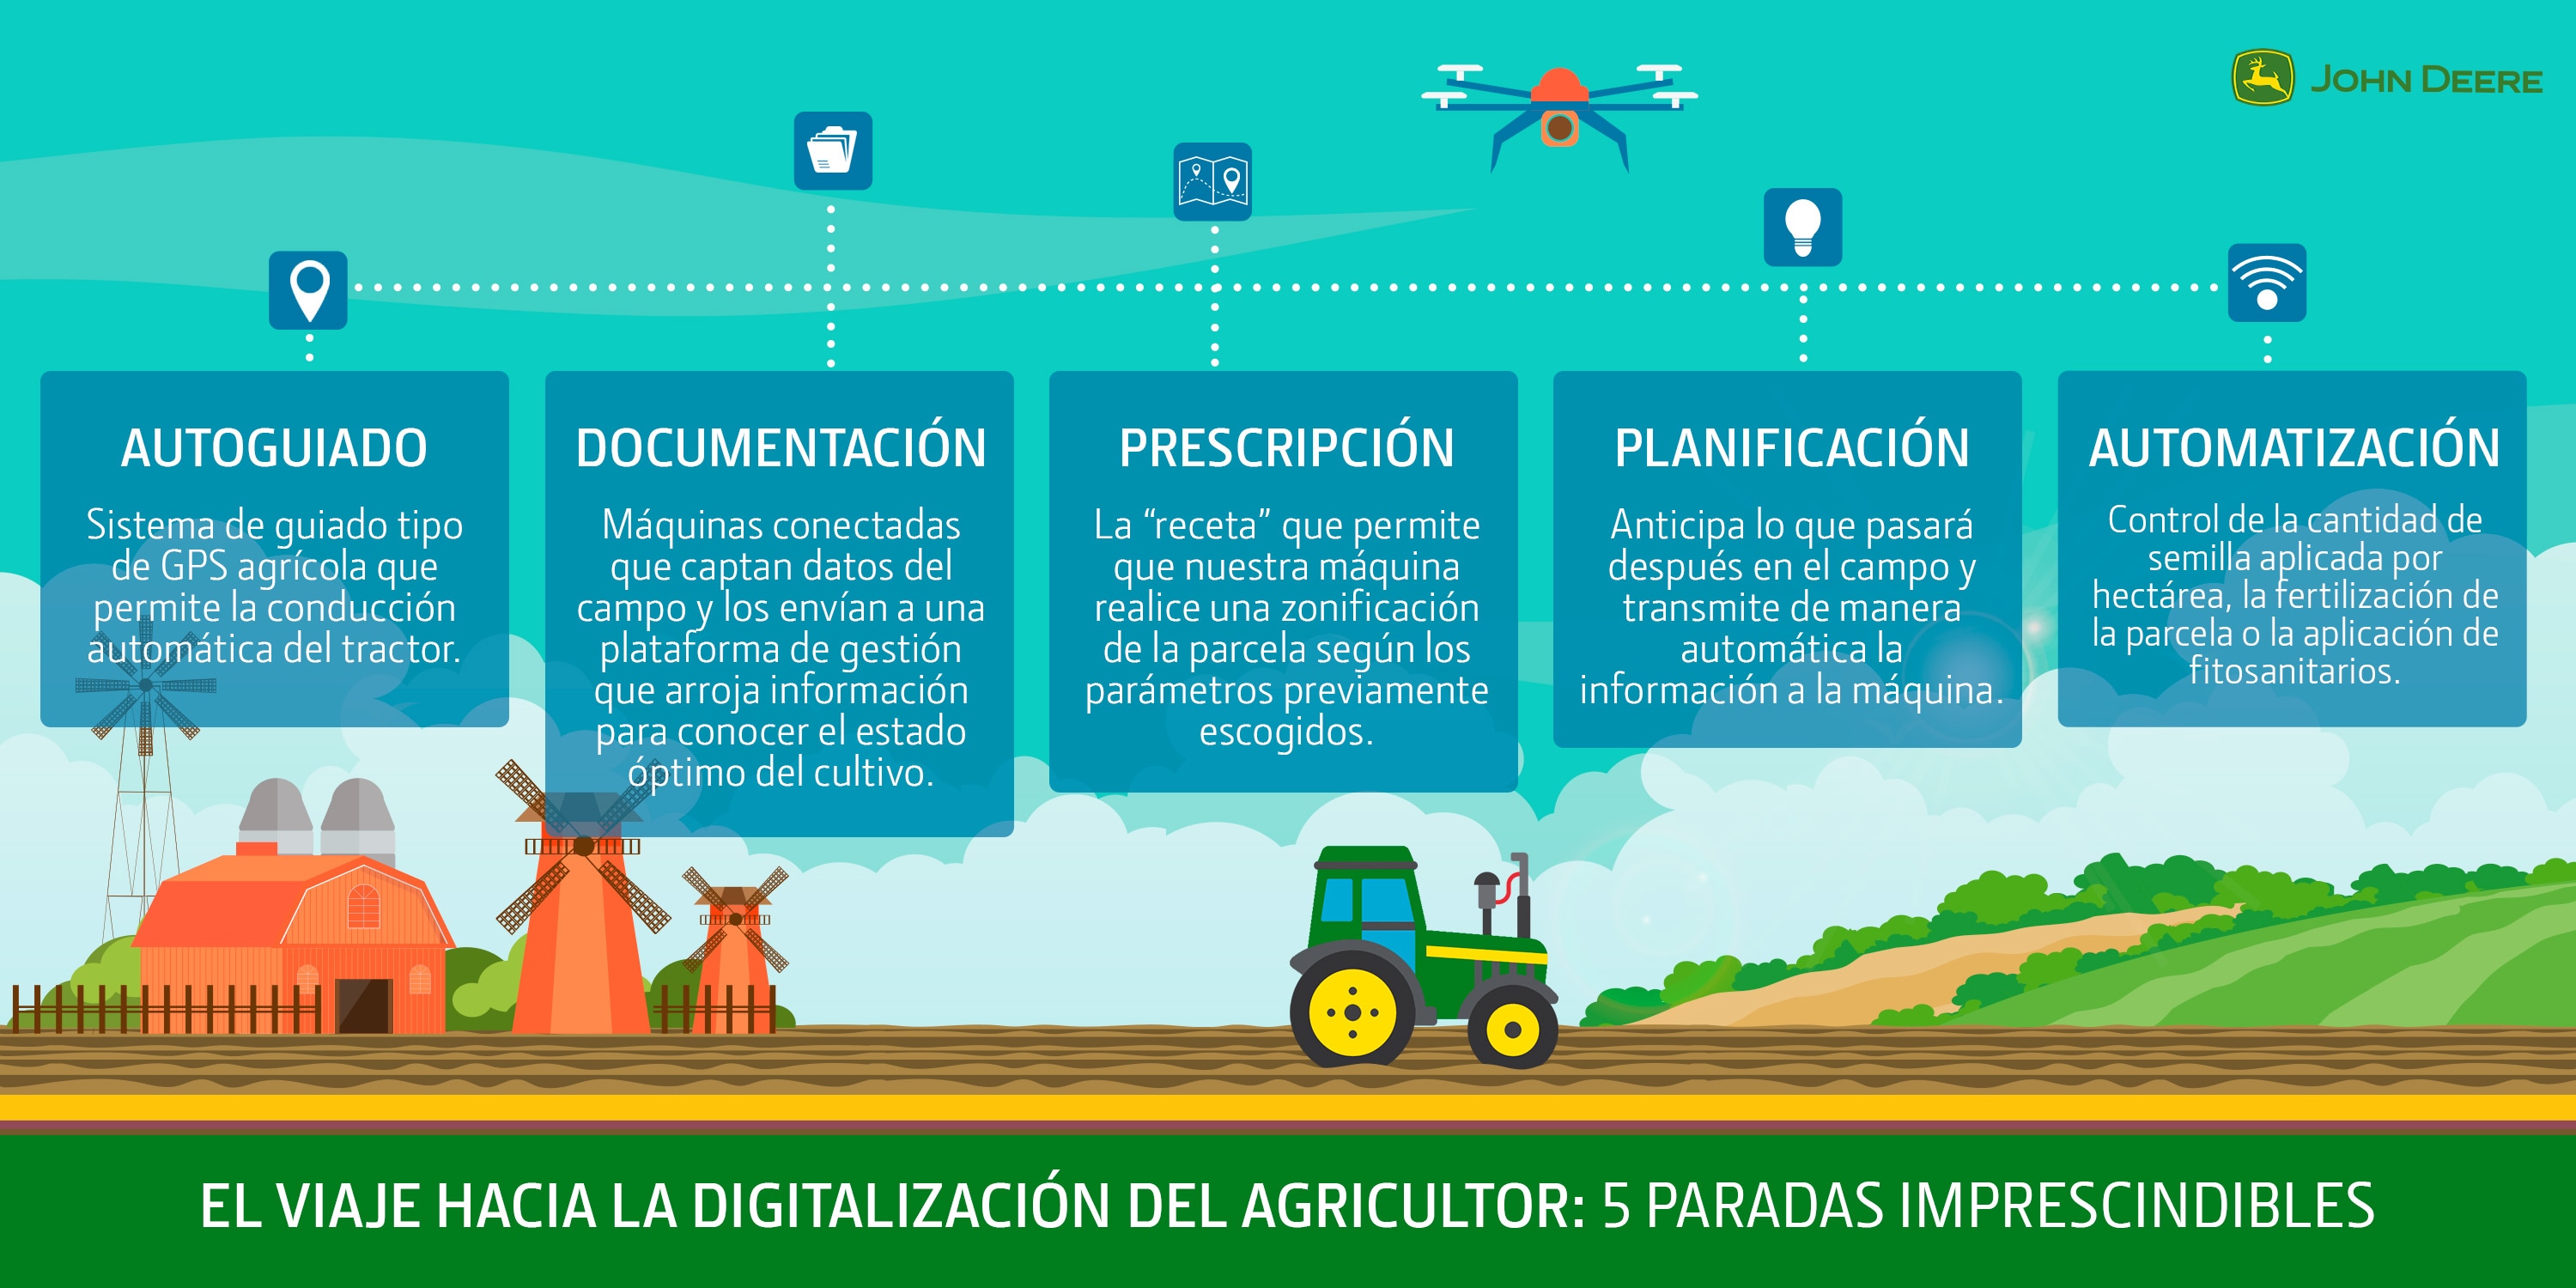 El viaje hacia la digitalización del agricultor: 5 paradas imprescindibles